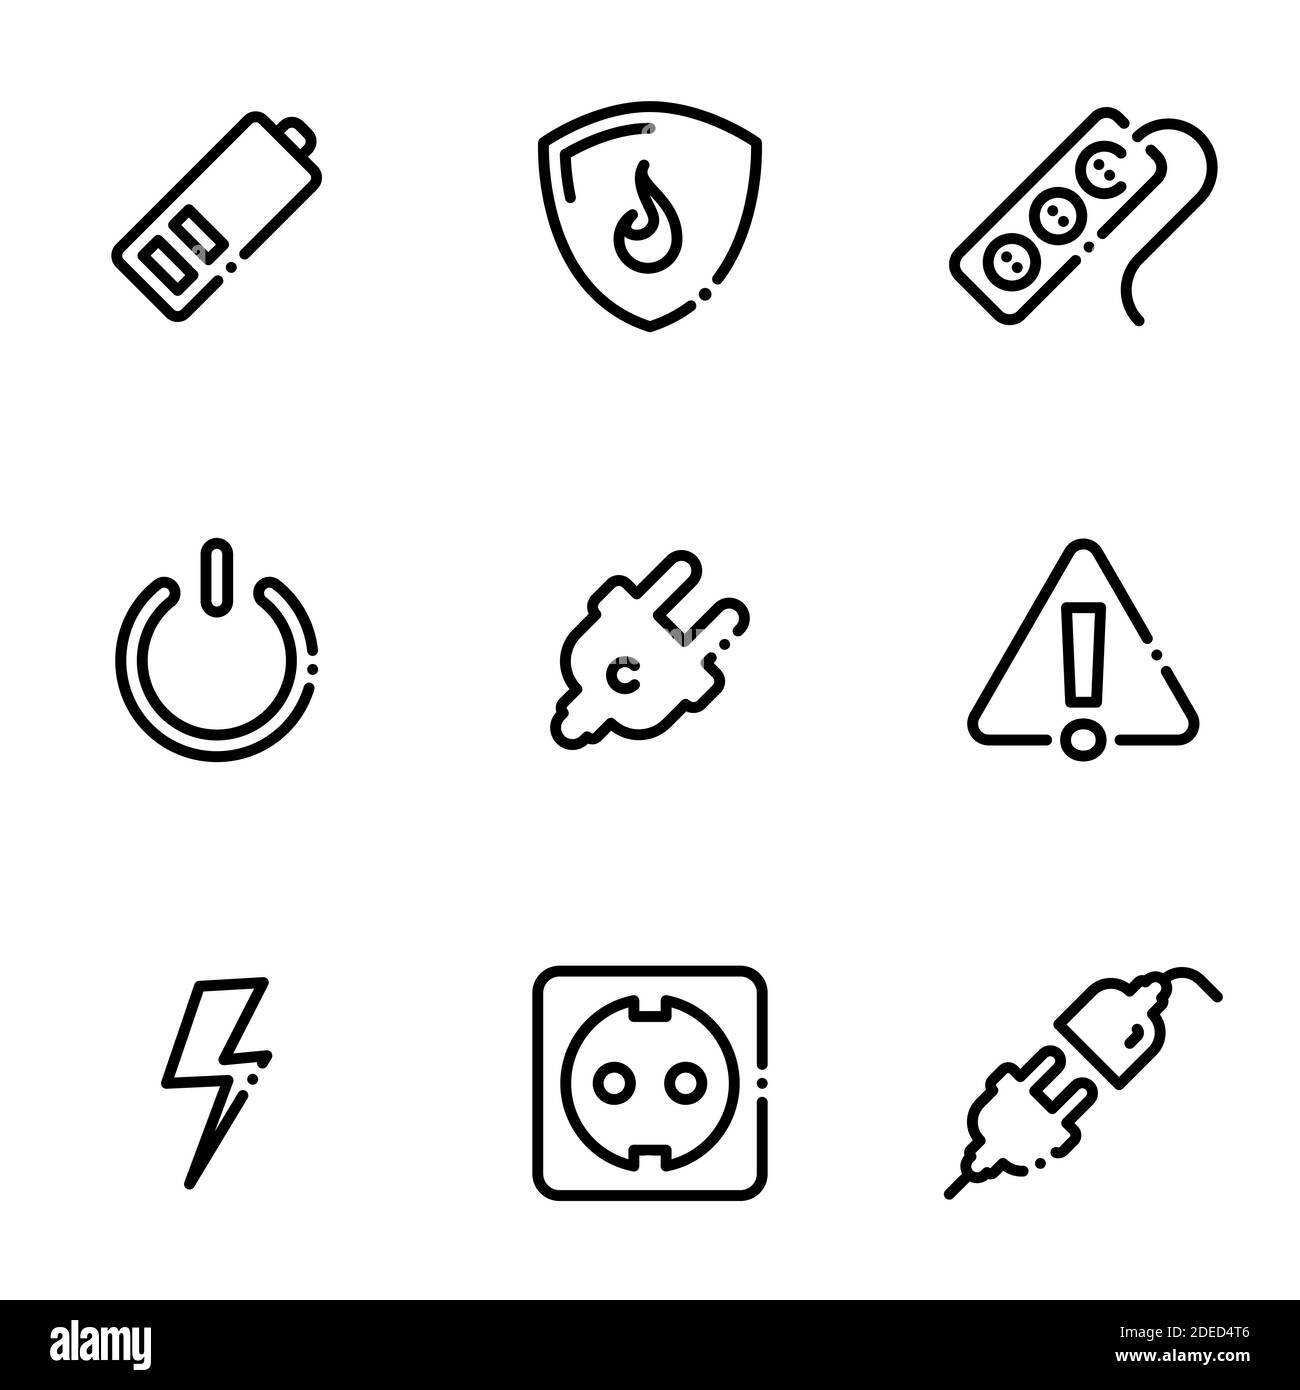 Conjunto de iconos negros aislados sobre fondo blanco, sobre el tema toma de corriente Ilustración del Vector